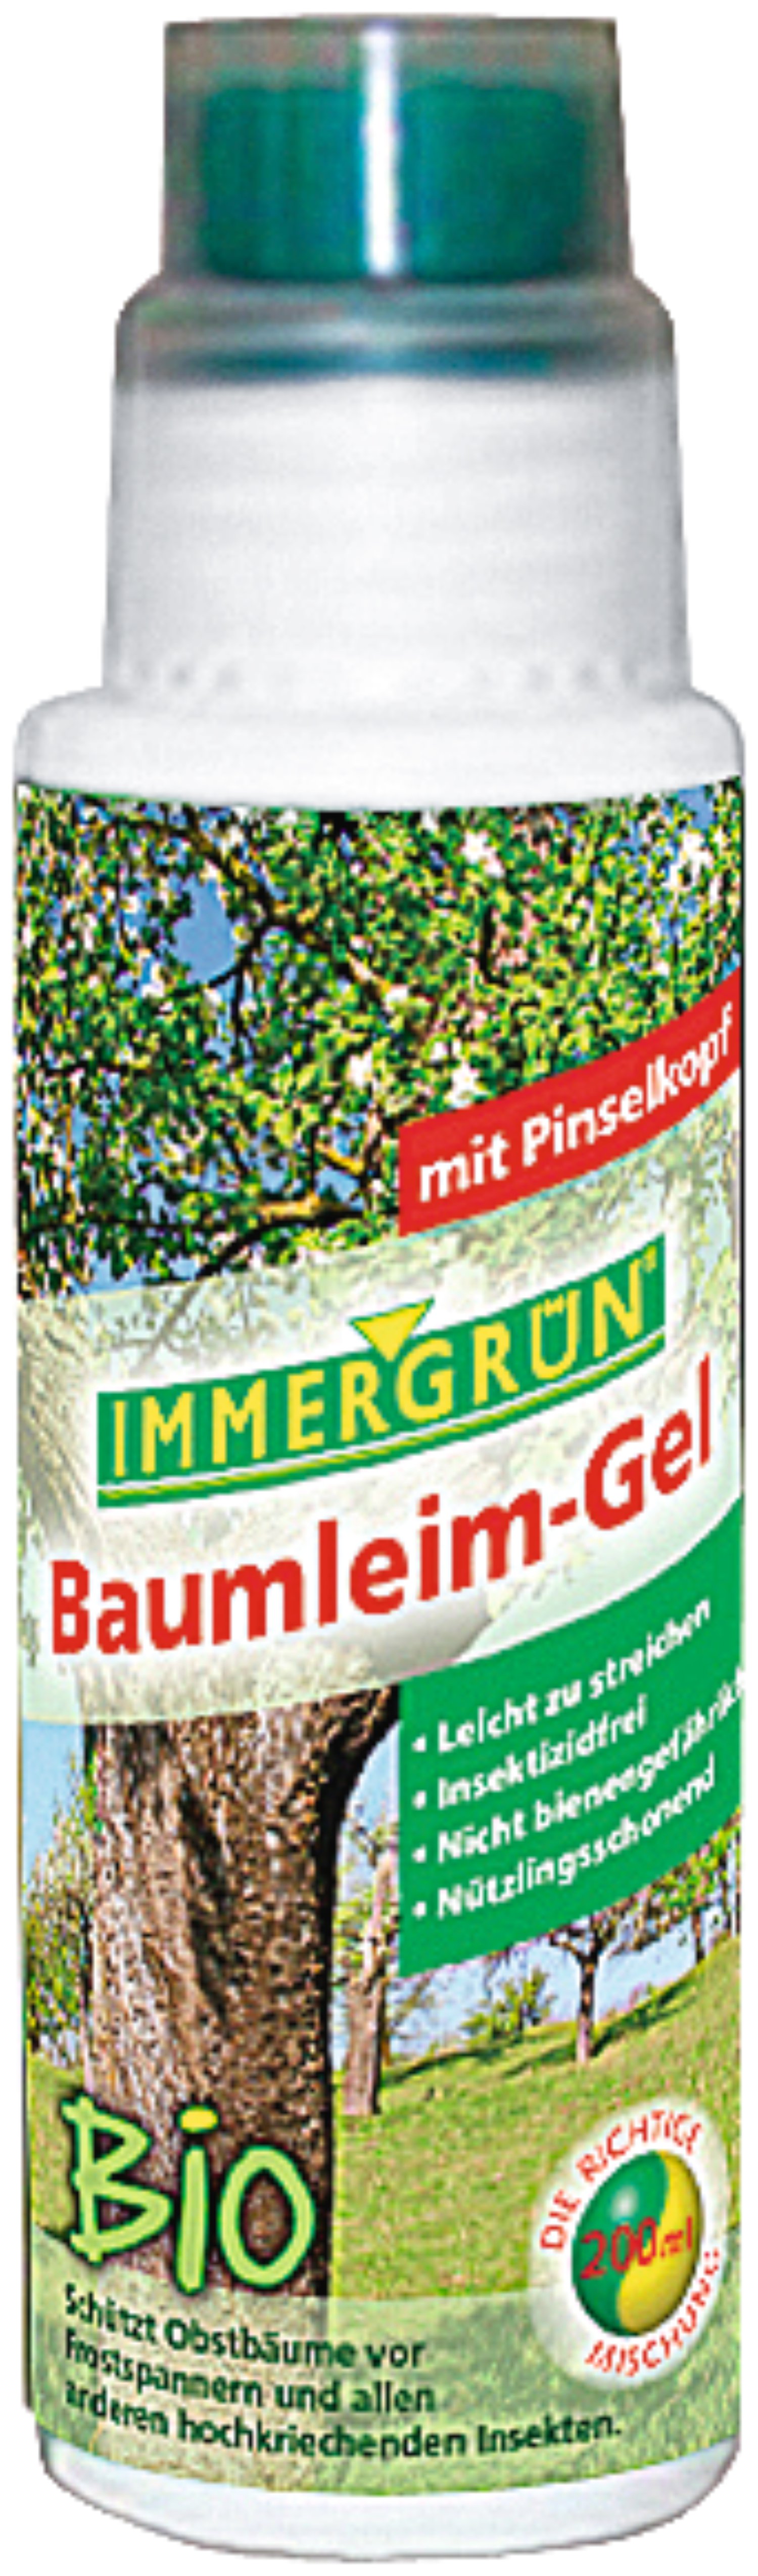 IMMERGRÜN Bio-Baumleim-Gel 200 ml